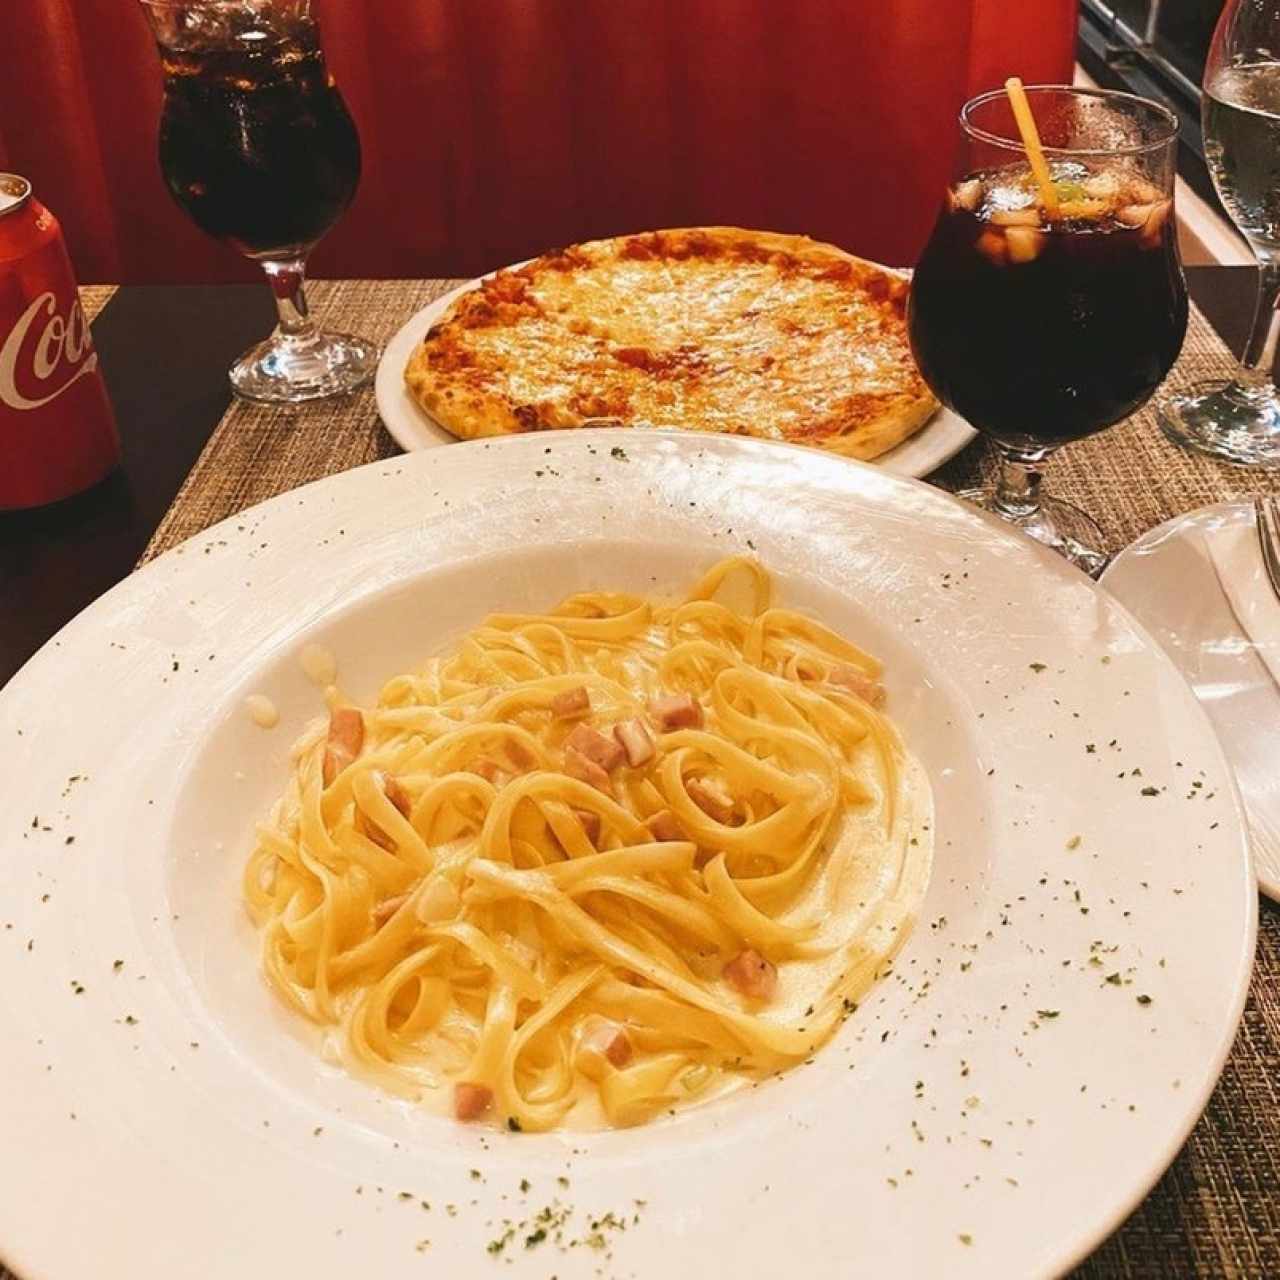 Es un restaurante de comida italiana muy bueno